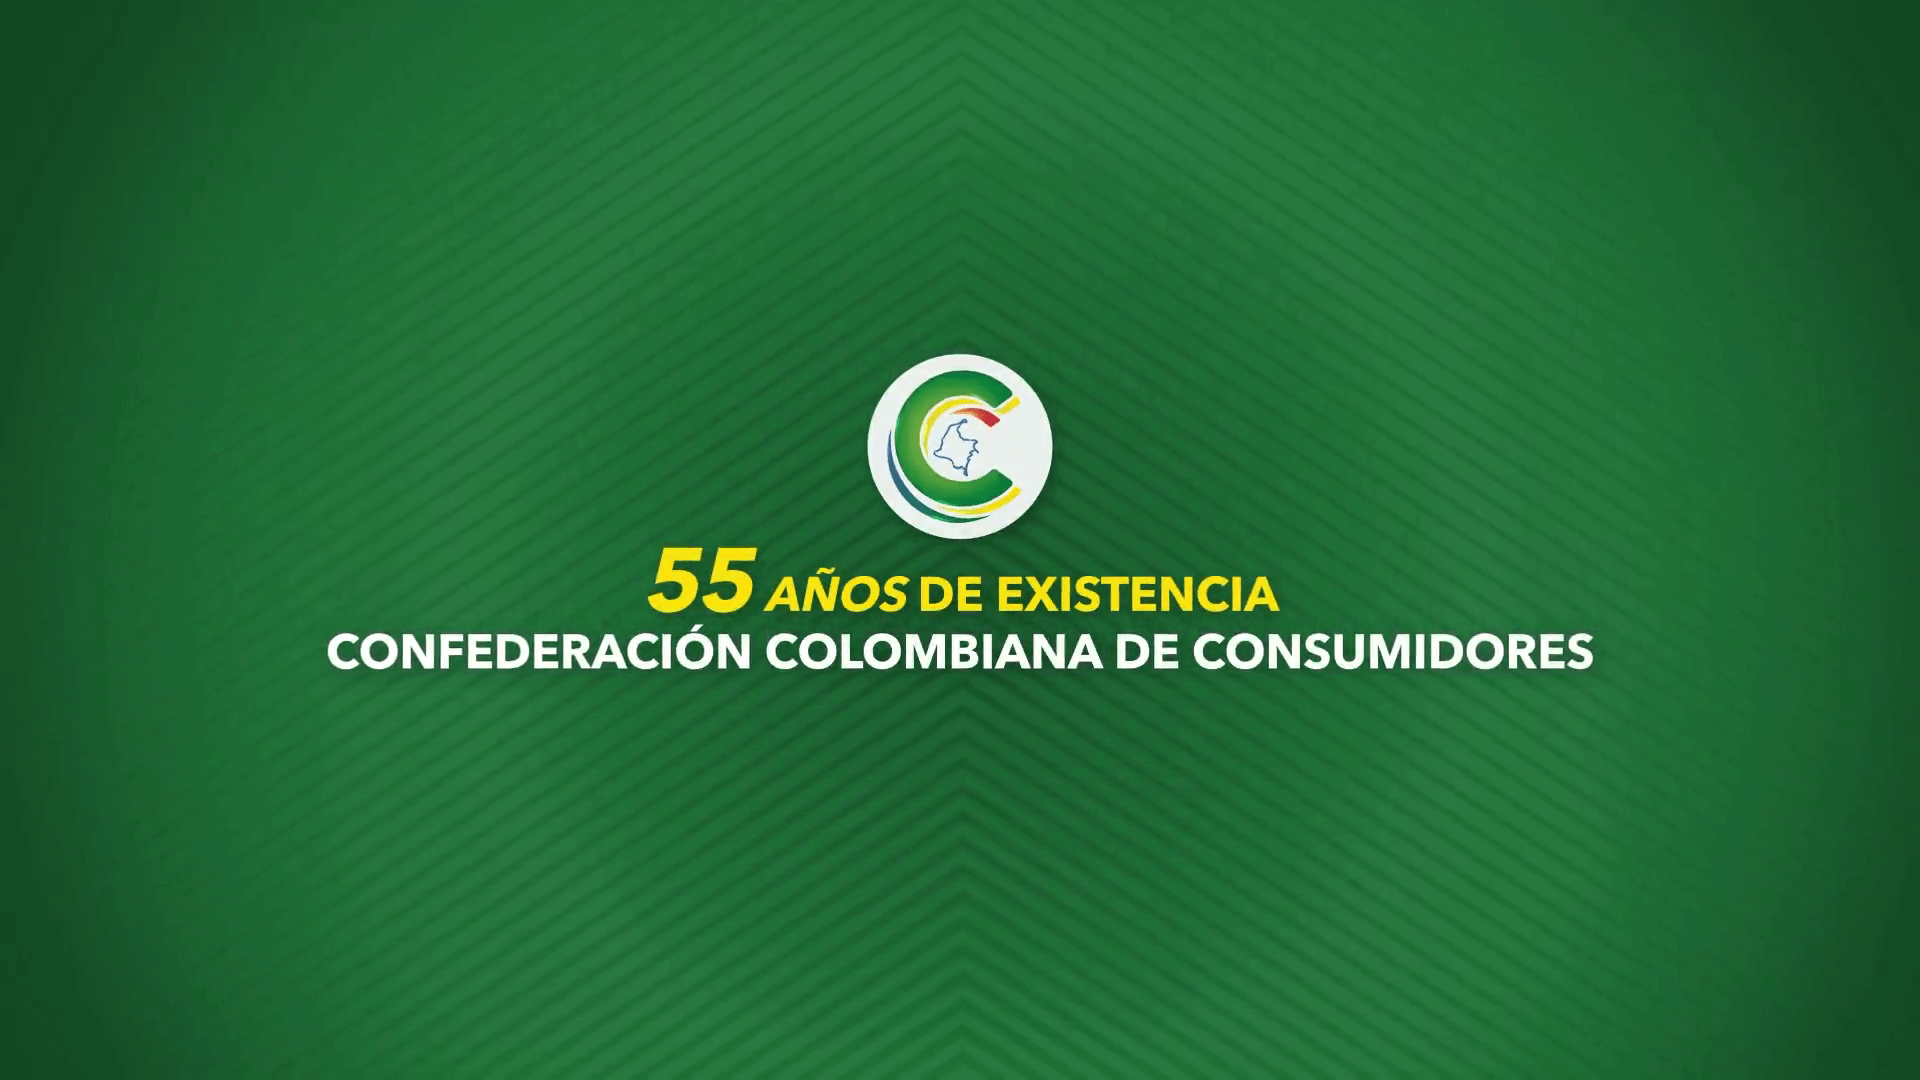 “55 años de existencia de la Confederación Colombiana de Consumidores”